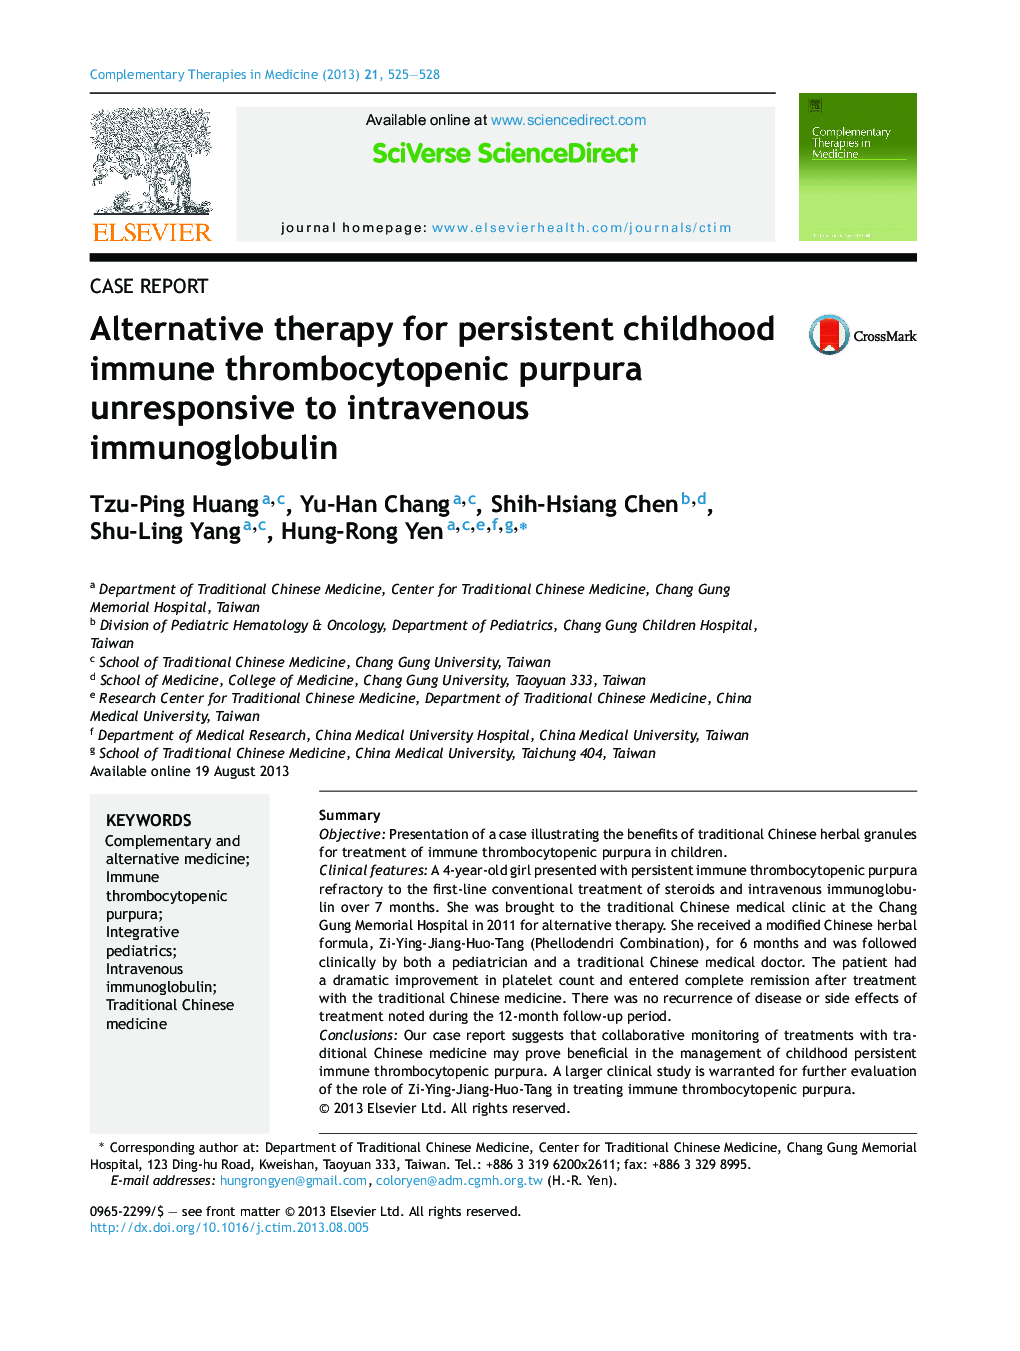 درمان جایگزین برای قرنطینه ترومبوسیتوپنیک پورپورای ایمن در دوران کودکی بی اعتماد به ایمونوگلوبولین وریدی 